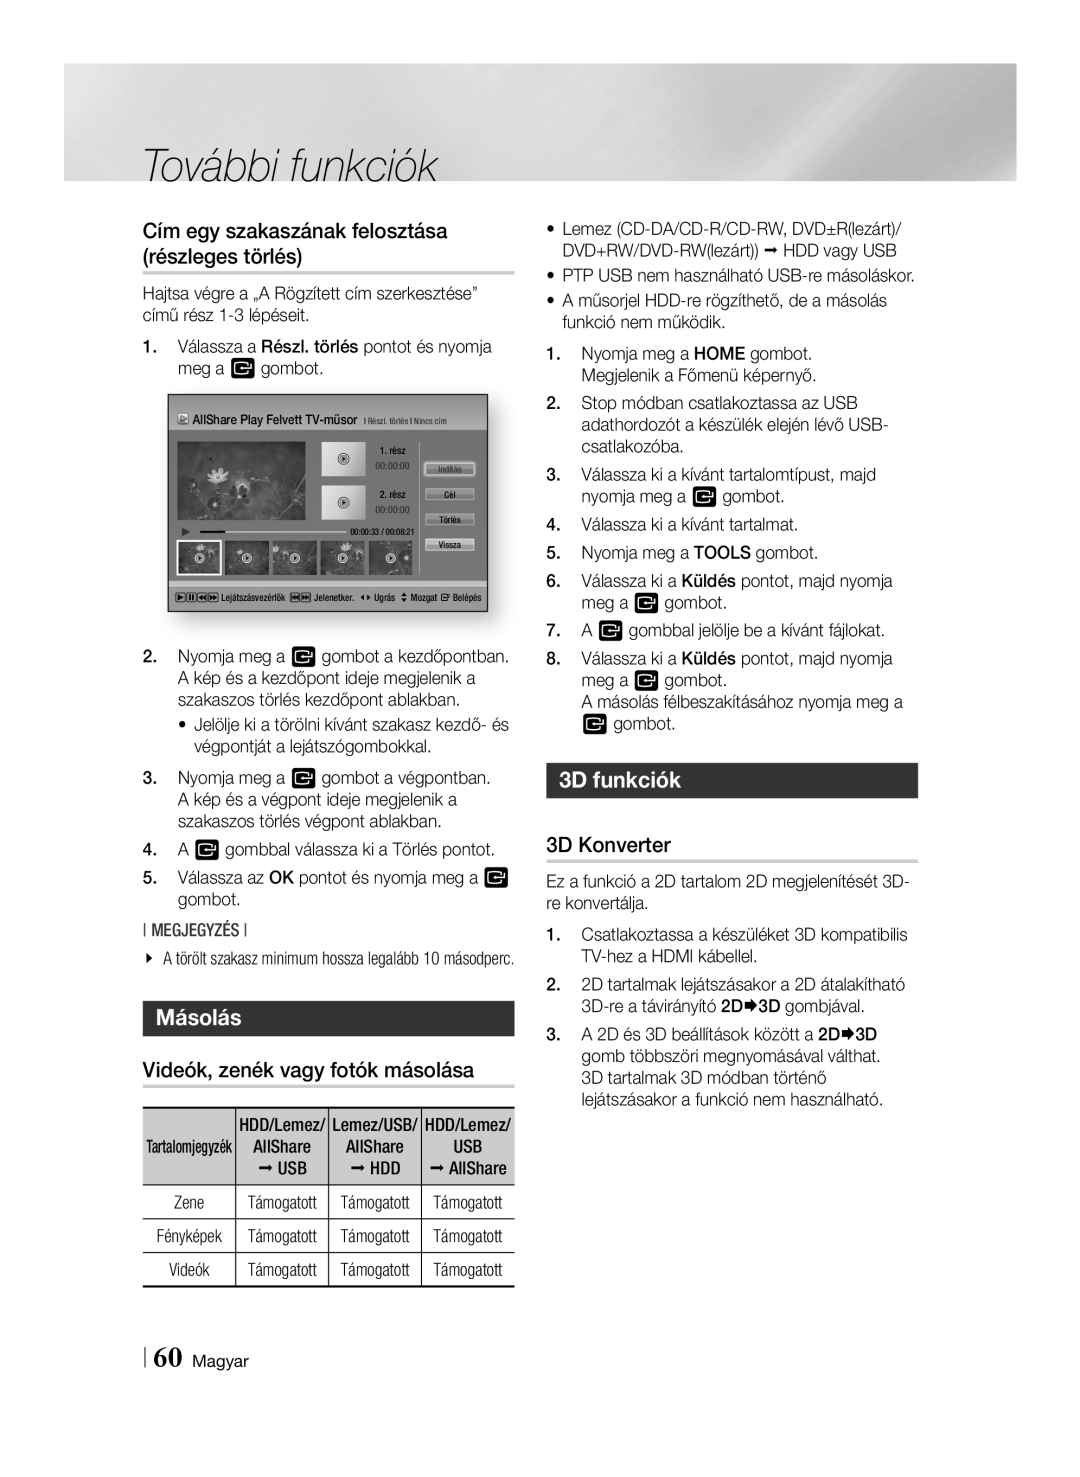 Samsung BD-E8900/EN manual Cím egy szakaszának felosztása részleges törlés, Másolás, Videók, zenék vagy fotók másolása 